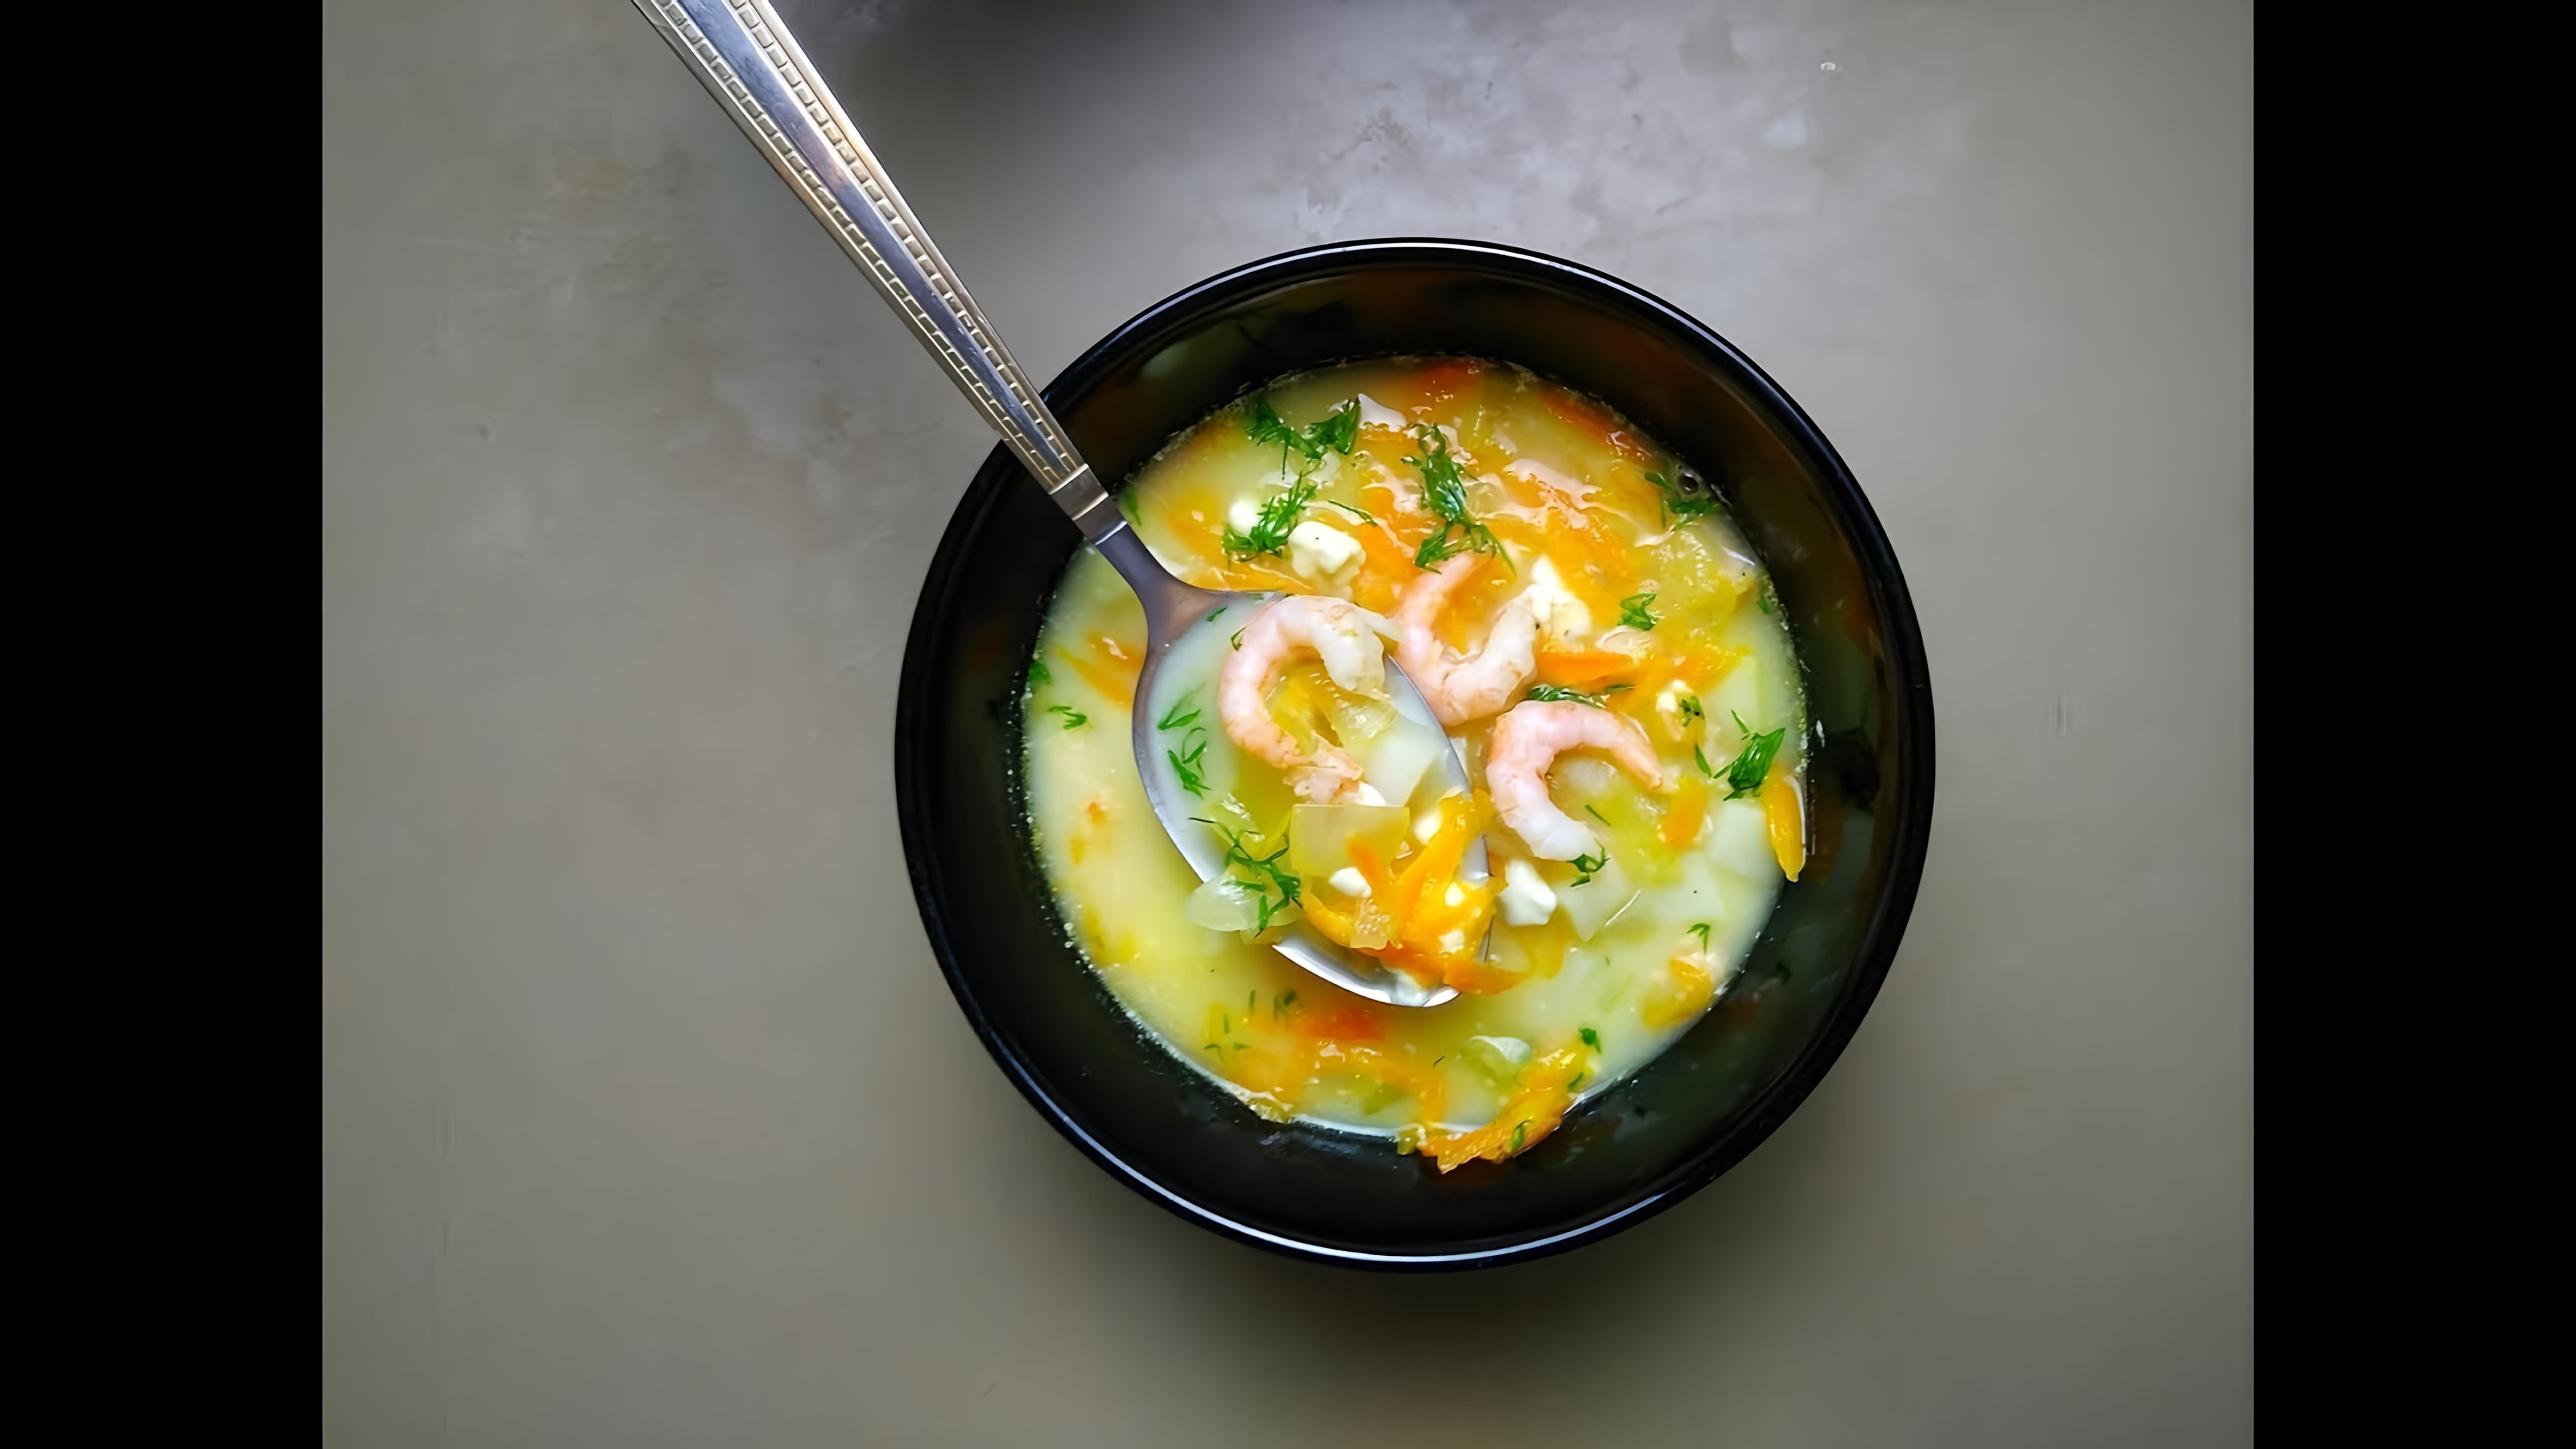 В этом видео демонстрируется процесс приготовления сырного супа с креветками